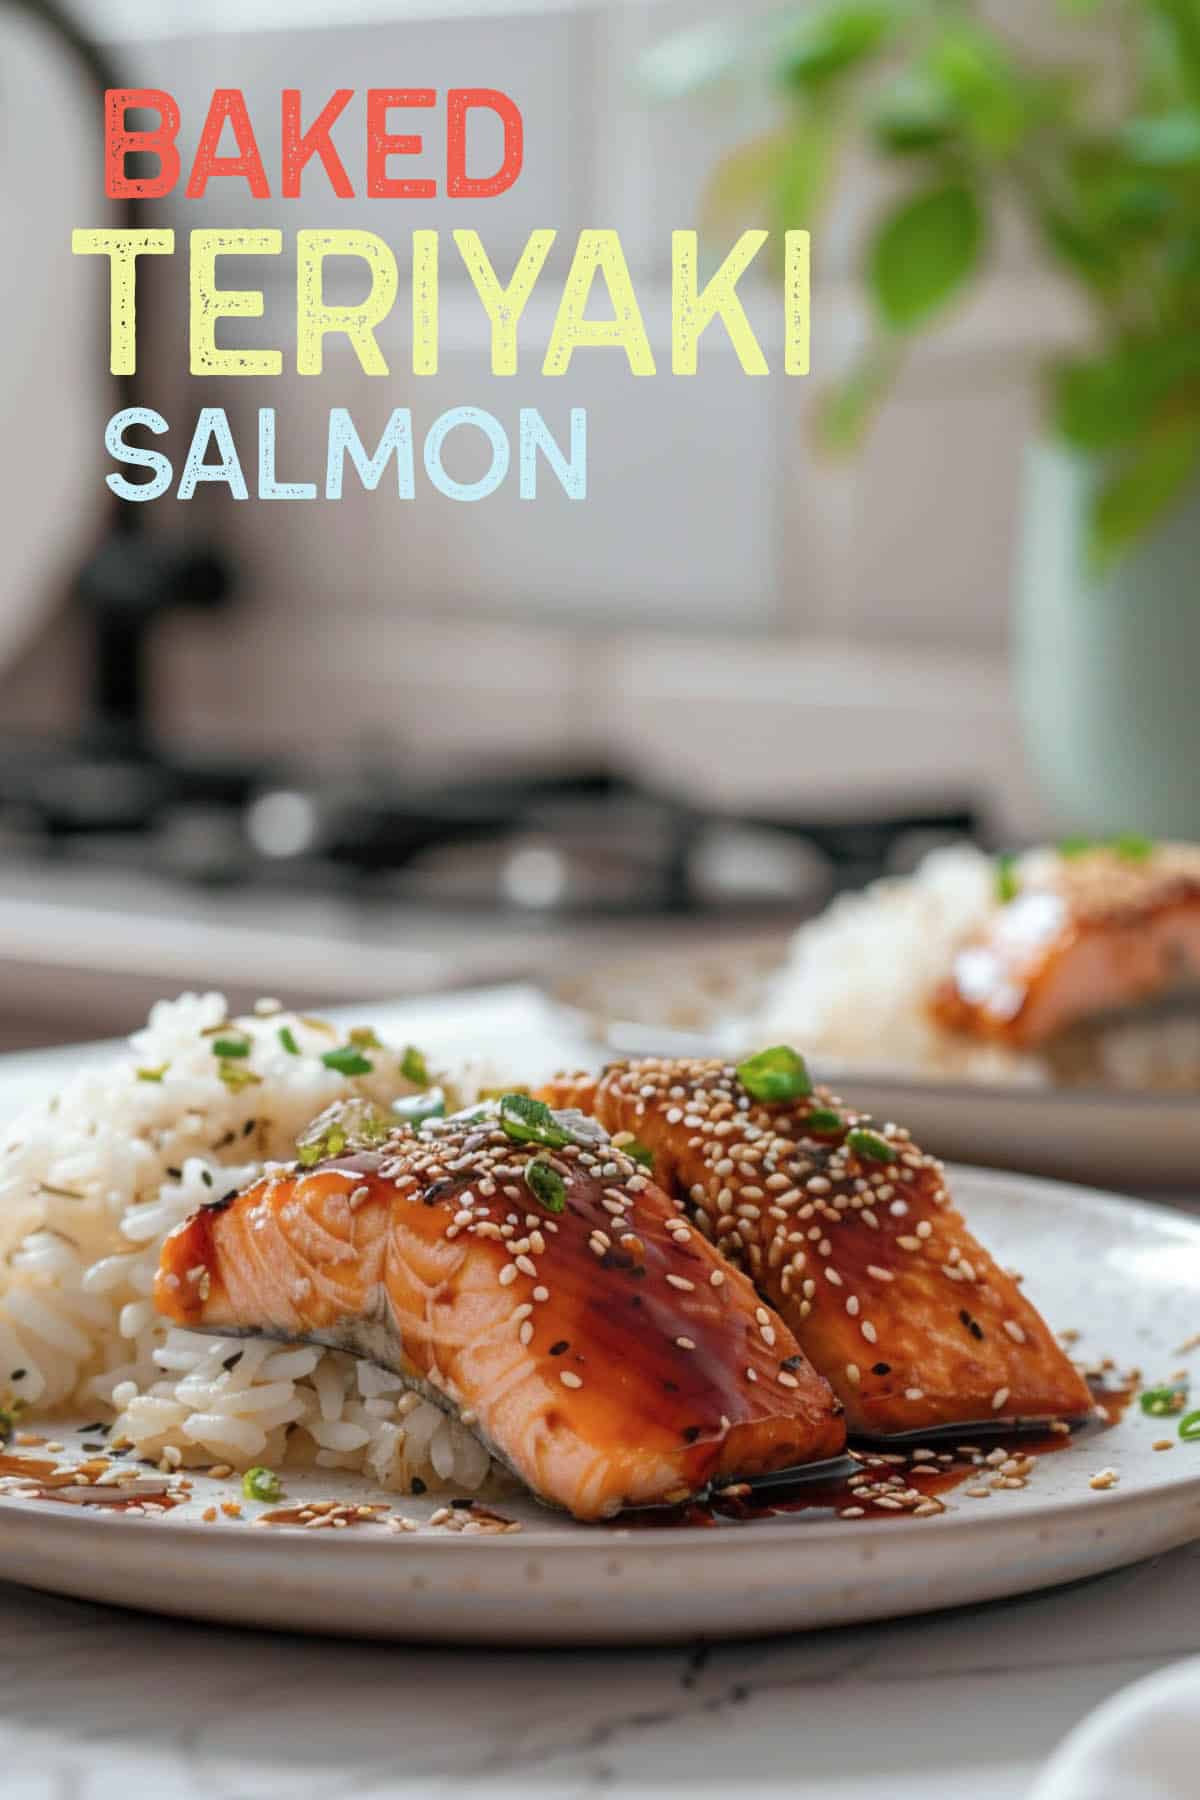 Crispy baked Teriyaki salmon, flavorful and enjoyable to prepare and eat.